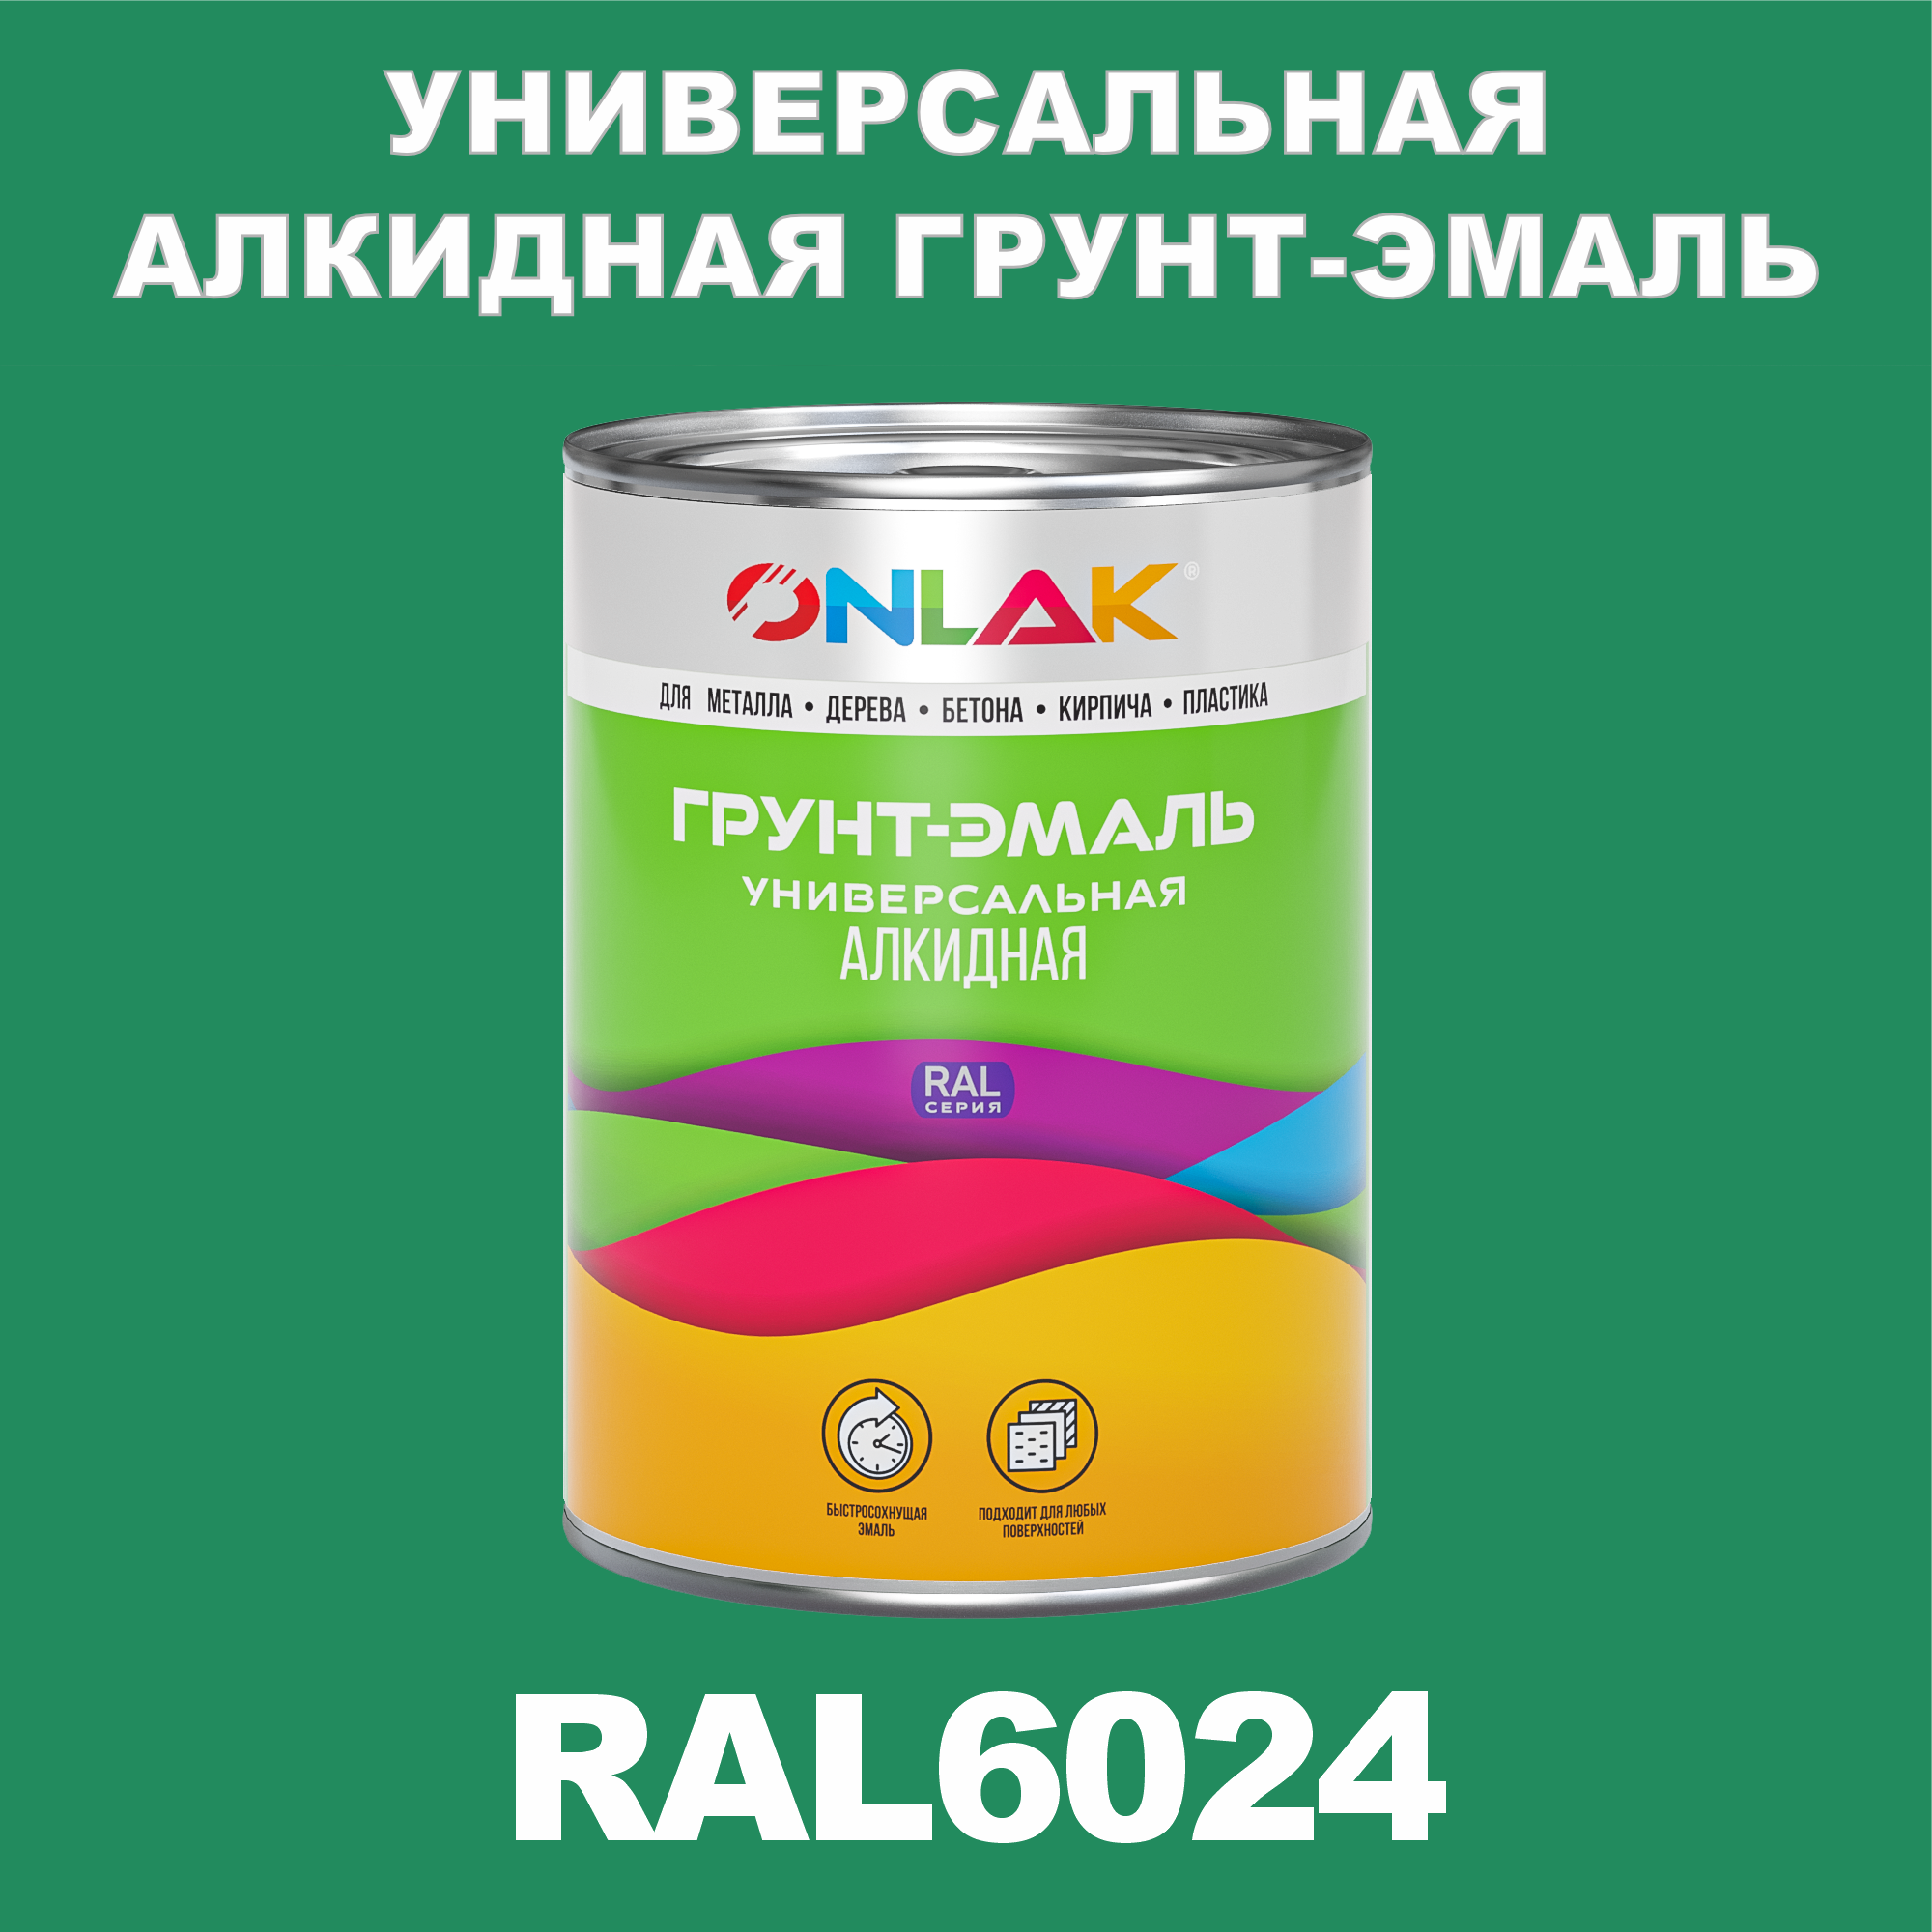 Грунт-эмаль ONLAK 1К RAL6024 антикоррозионная алкидная по металлу по ржавчине 1 кг